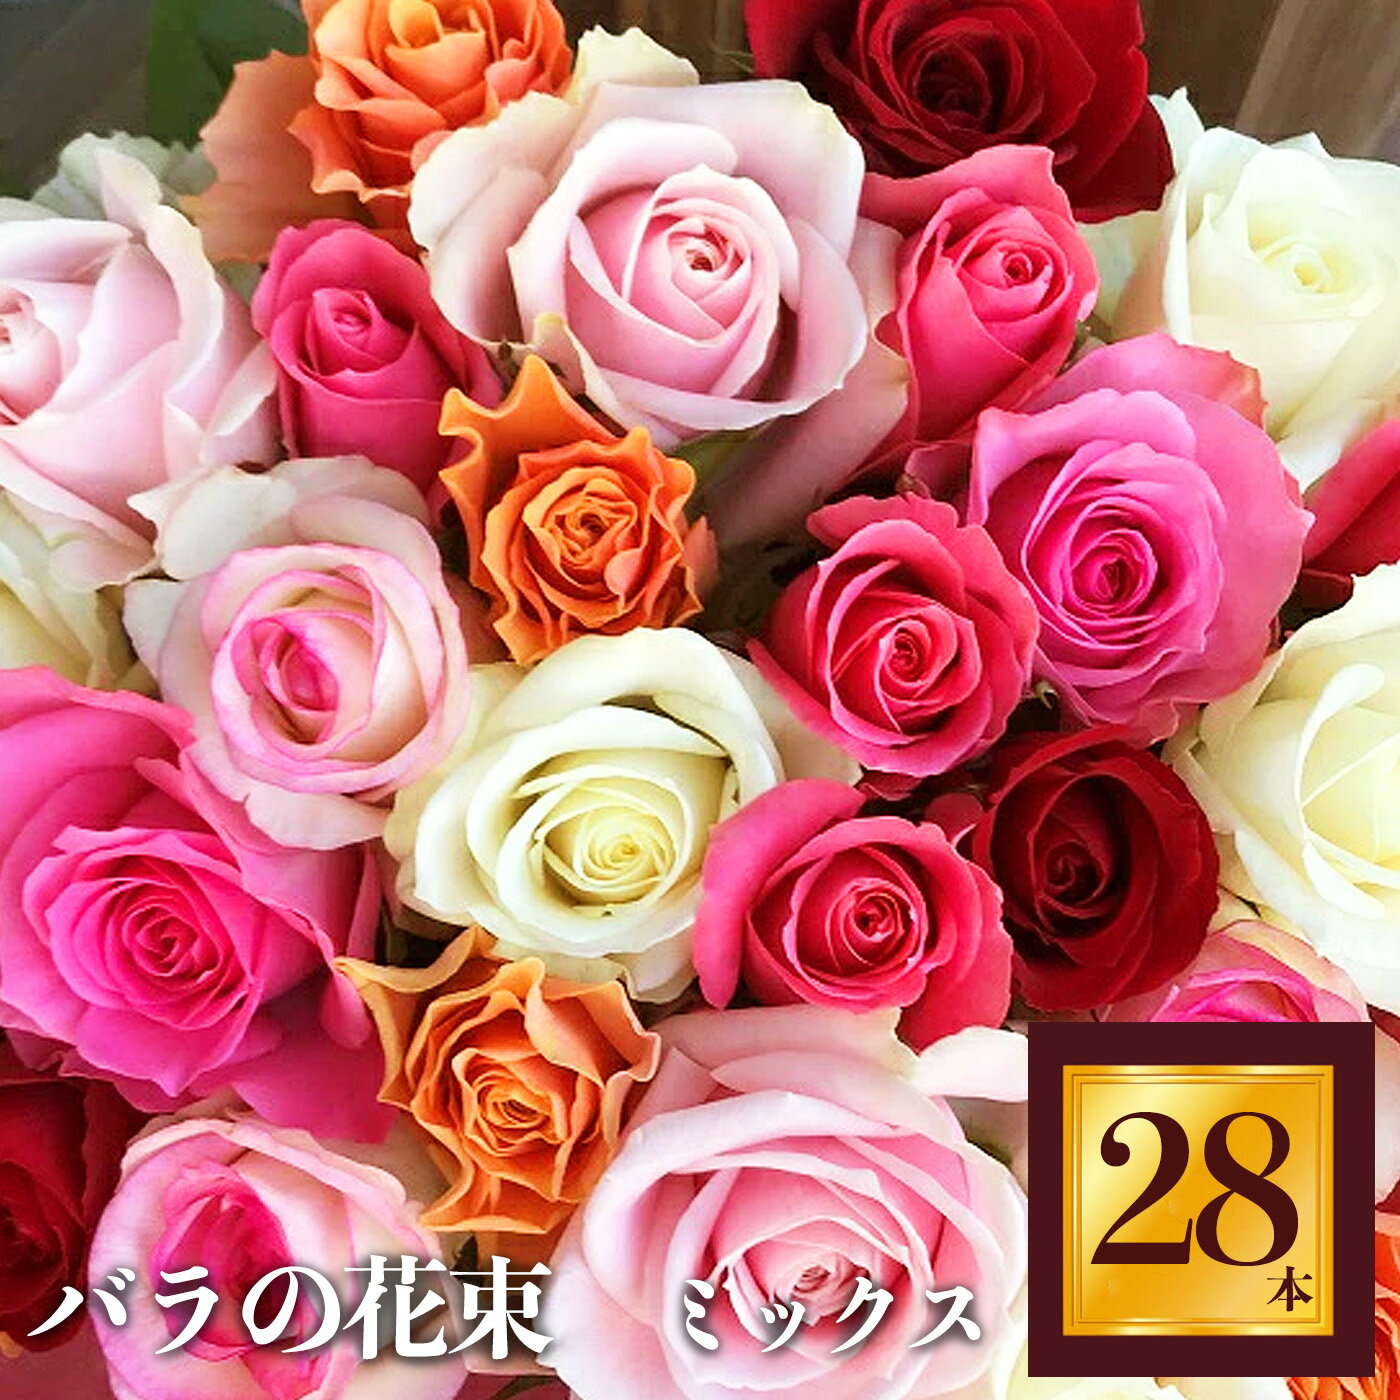 【ふるさと納税】Heguri Rose バラの花束（28本） ローズ フラワー 新鮮 高品質 綺麗 平群のバラ 花束 平群ブランド 誕生日 記念日 お祝い